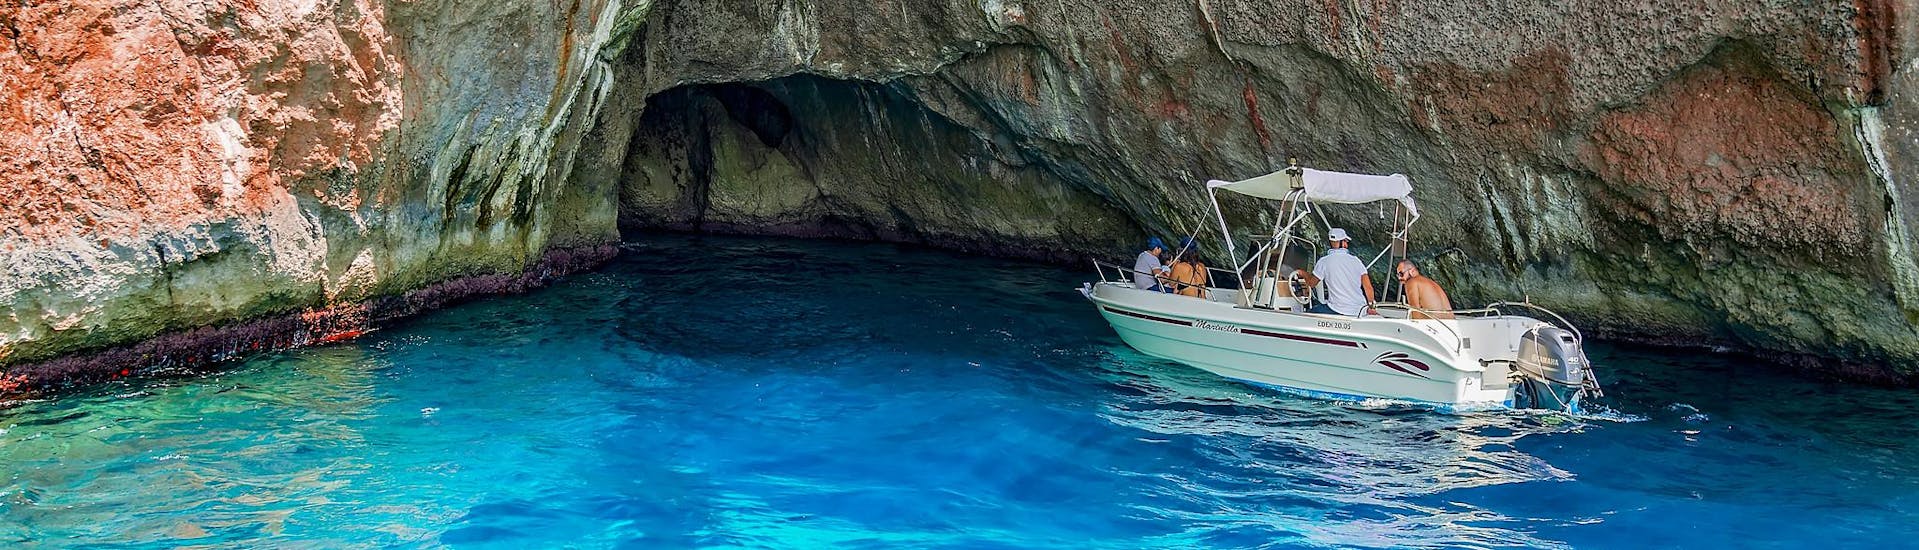 Un groupe de personnes se dirigeant vers une grotte marine profite d'une activité de location de bateaux où aucun permis n'est nécessaire